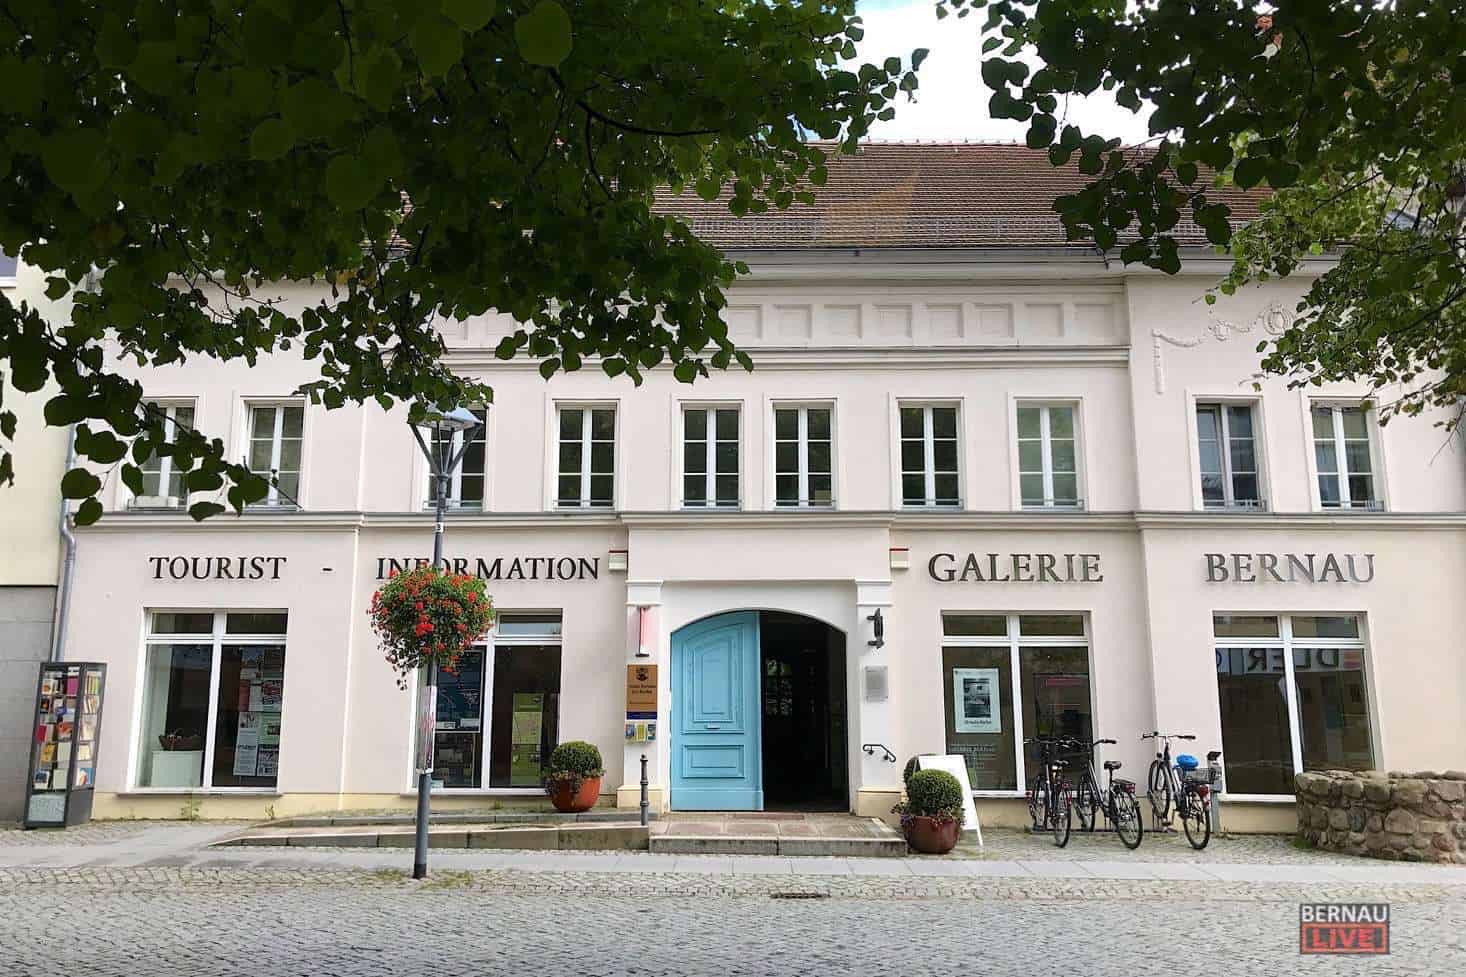 Tourist-Information in Bernau bei Berlin nach Umbau in neuem Glanz